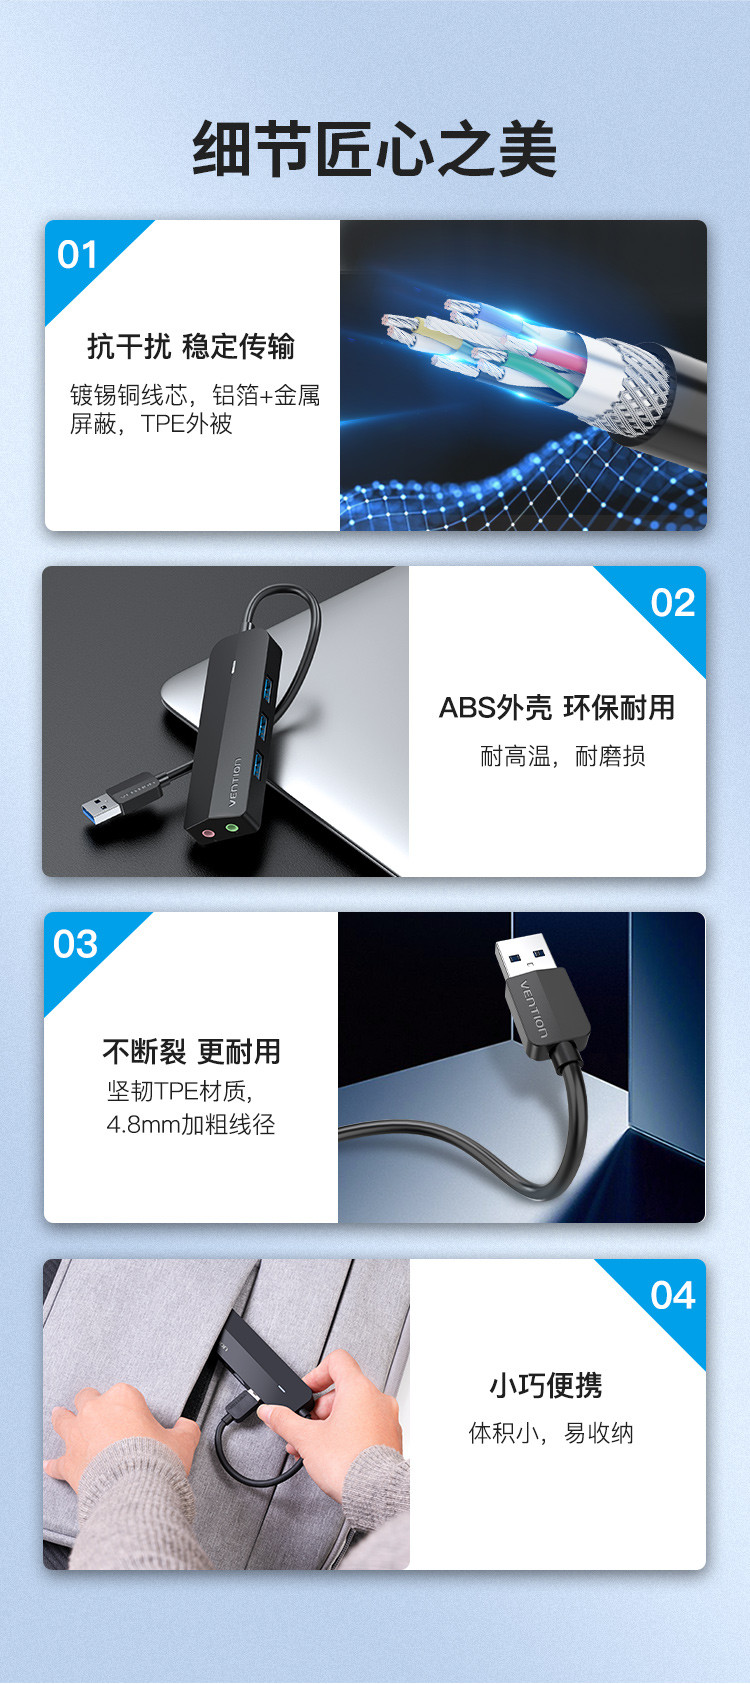 威迅 CHI系列USB 3.0转USB3.0x3 HUB